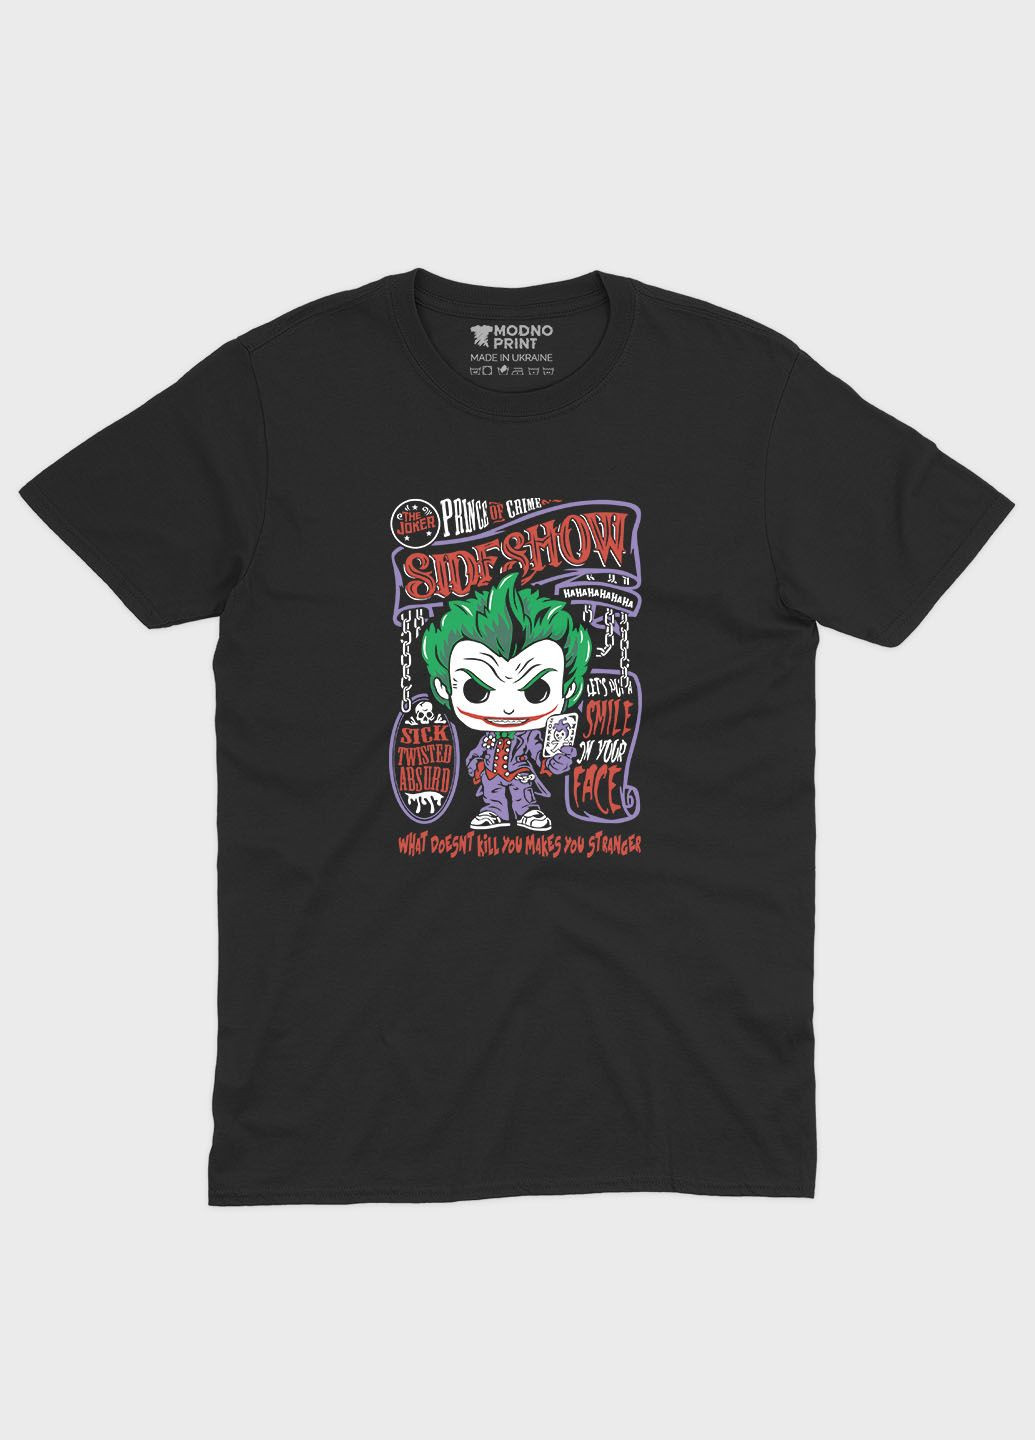 Черная демисезонная футболка для мальчика с принтом супервора - джокер (ts001-1-bl-006-005-027-b) Modno